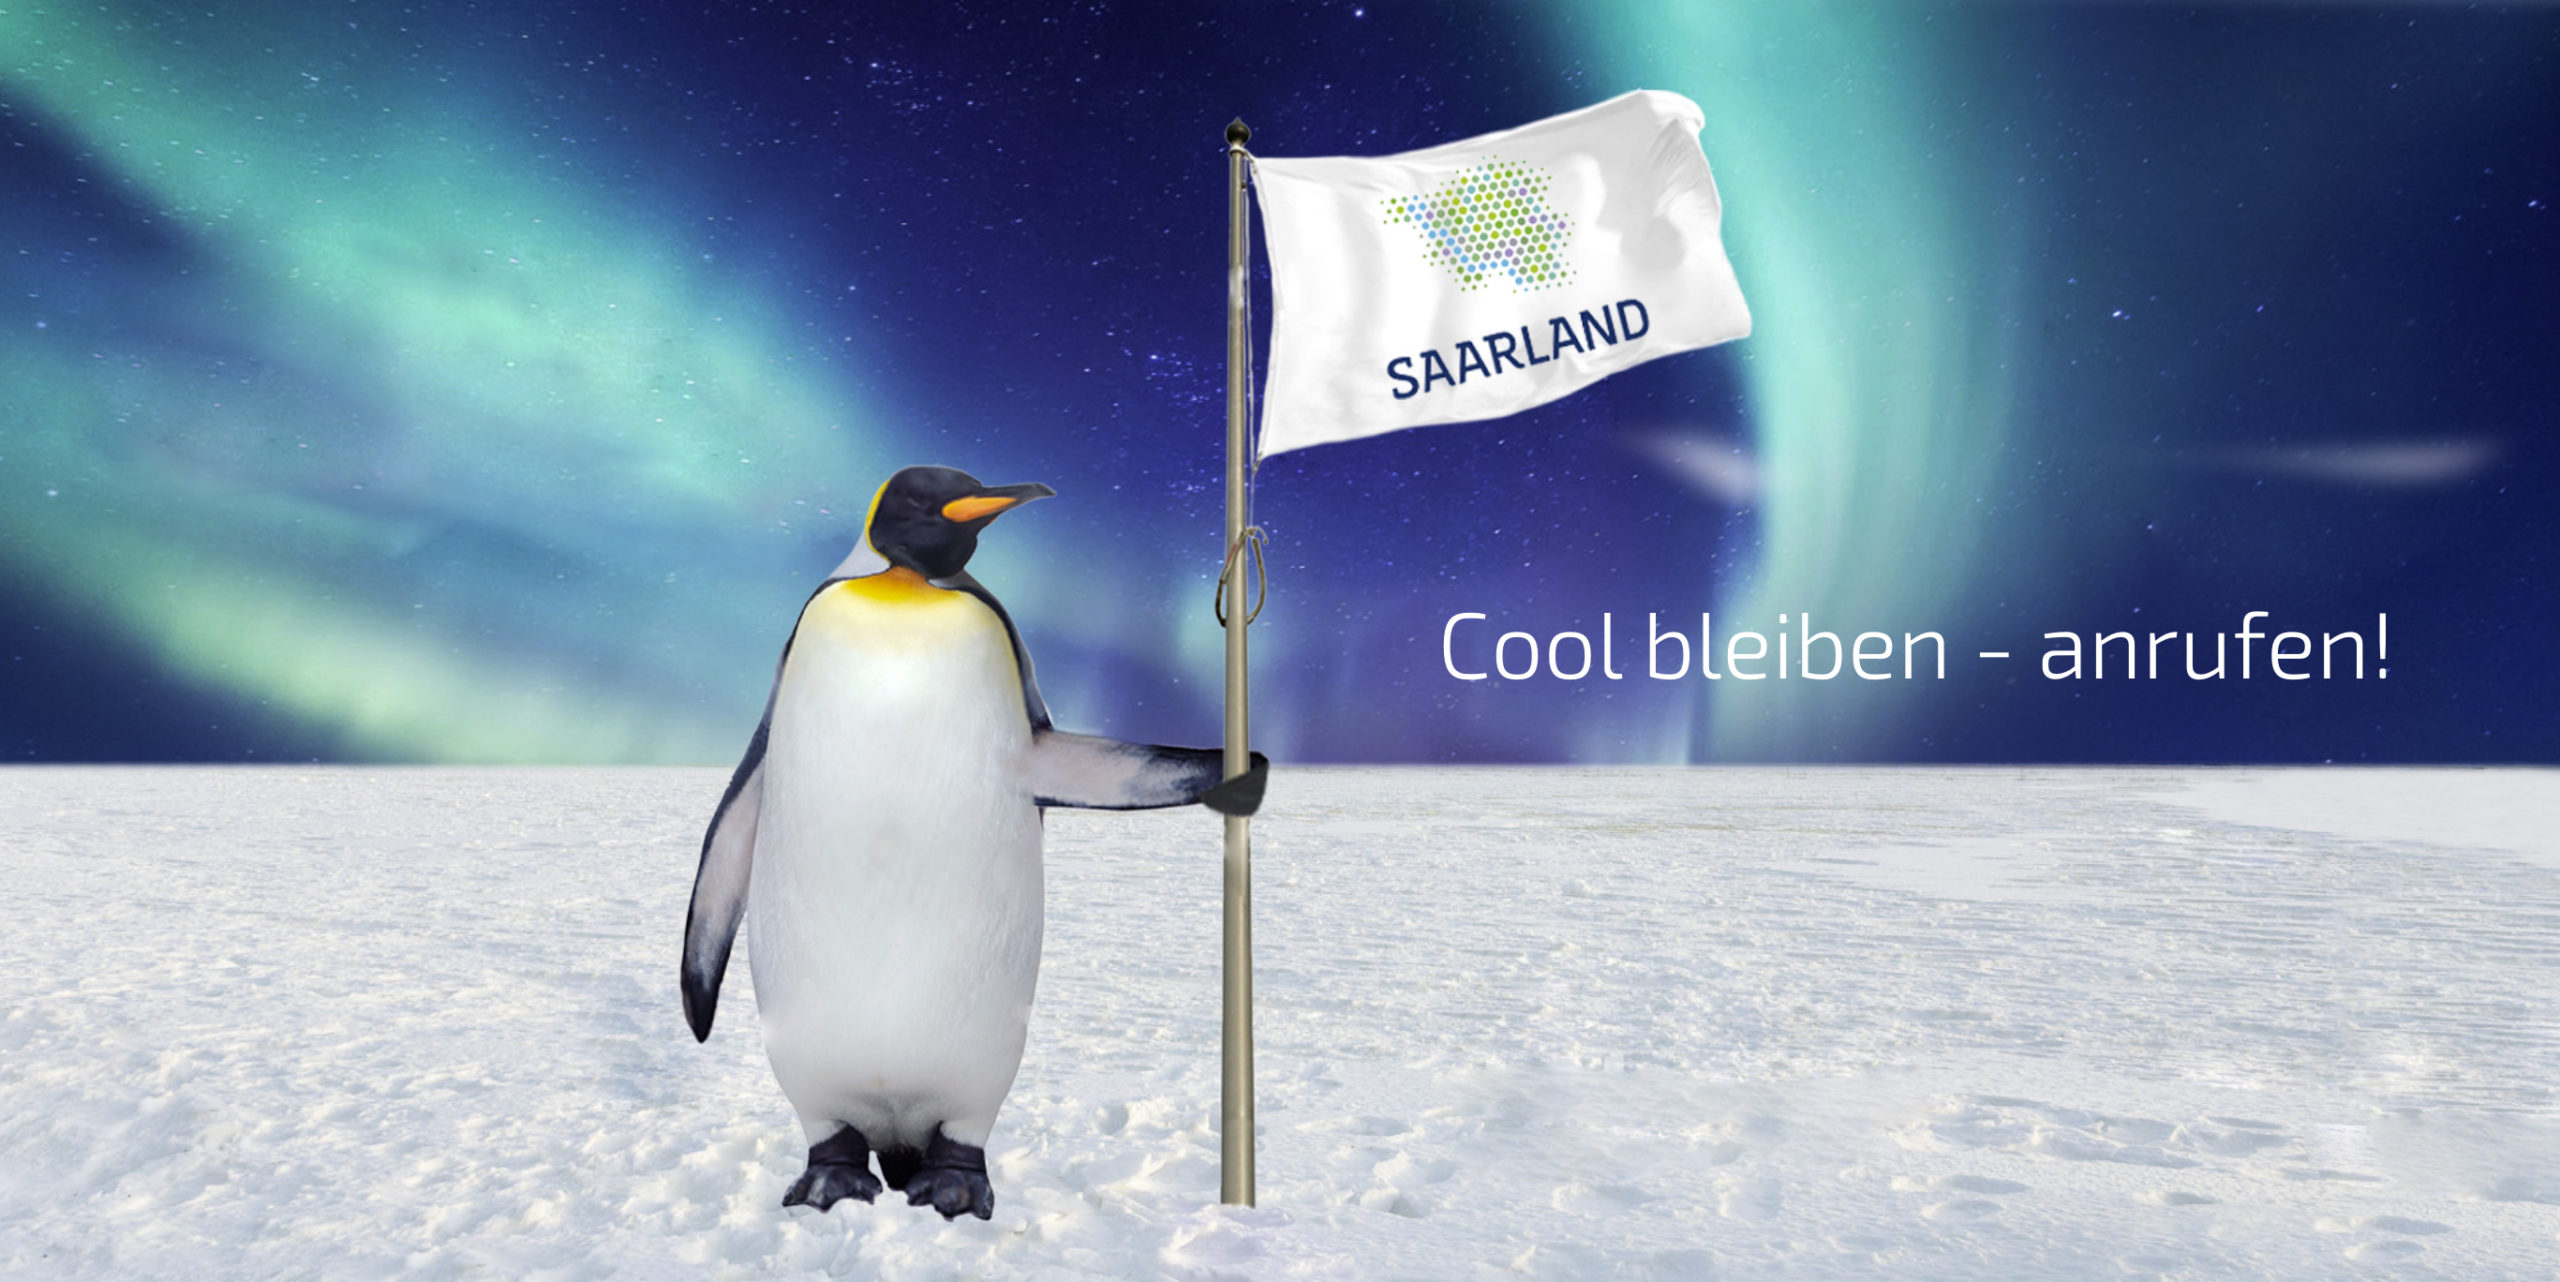 Pinguin mit Saarlandflagge